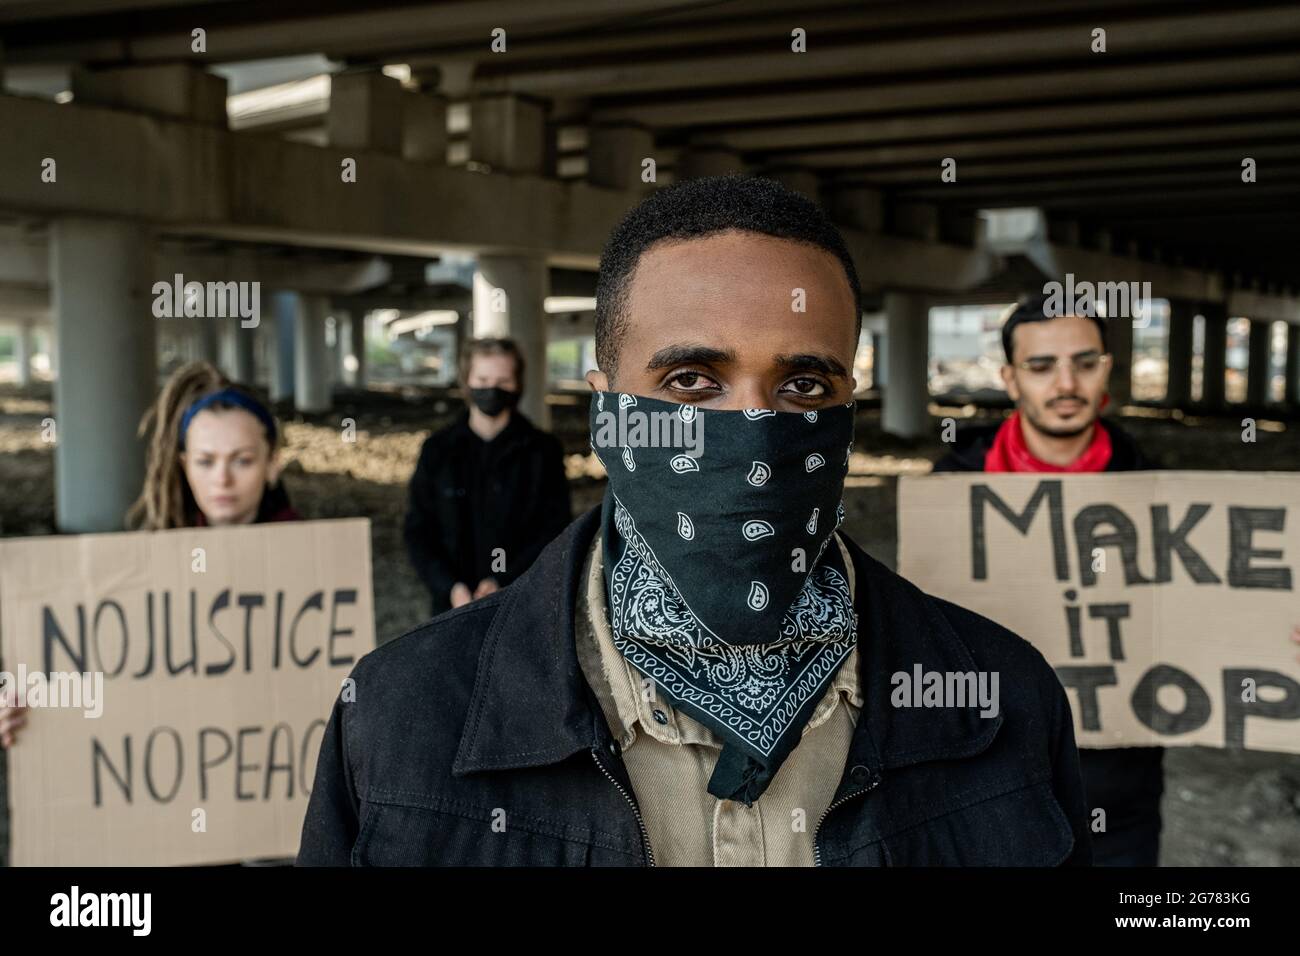 Jeune Noir en bandana debout contre les protestataires avec des bannières sous le pont Banque D'Images